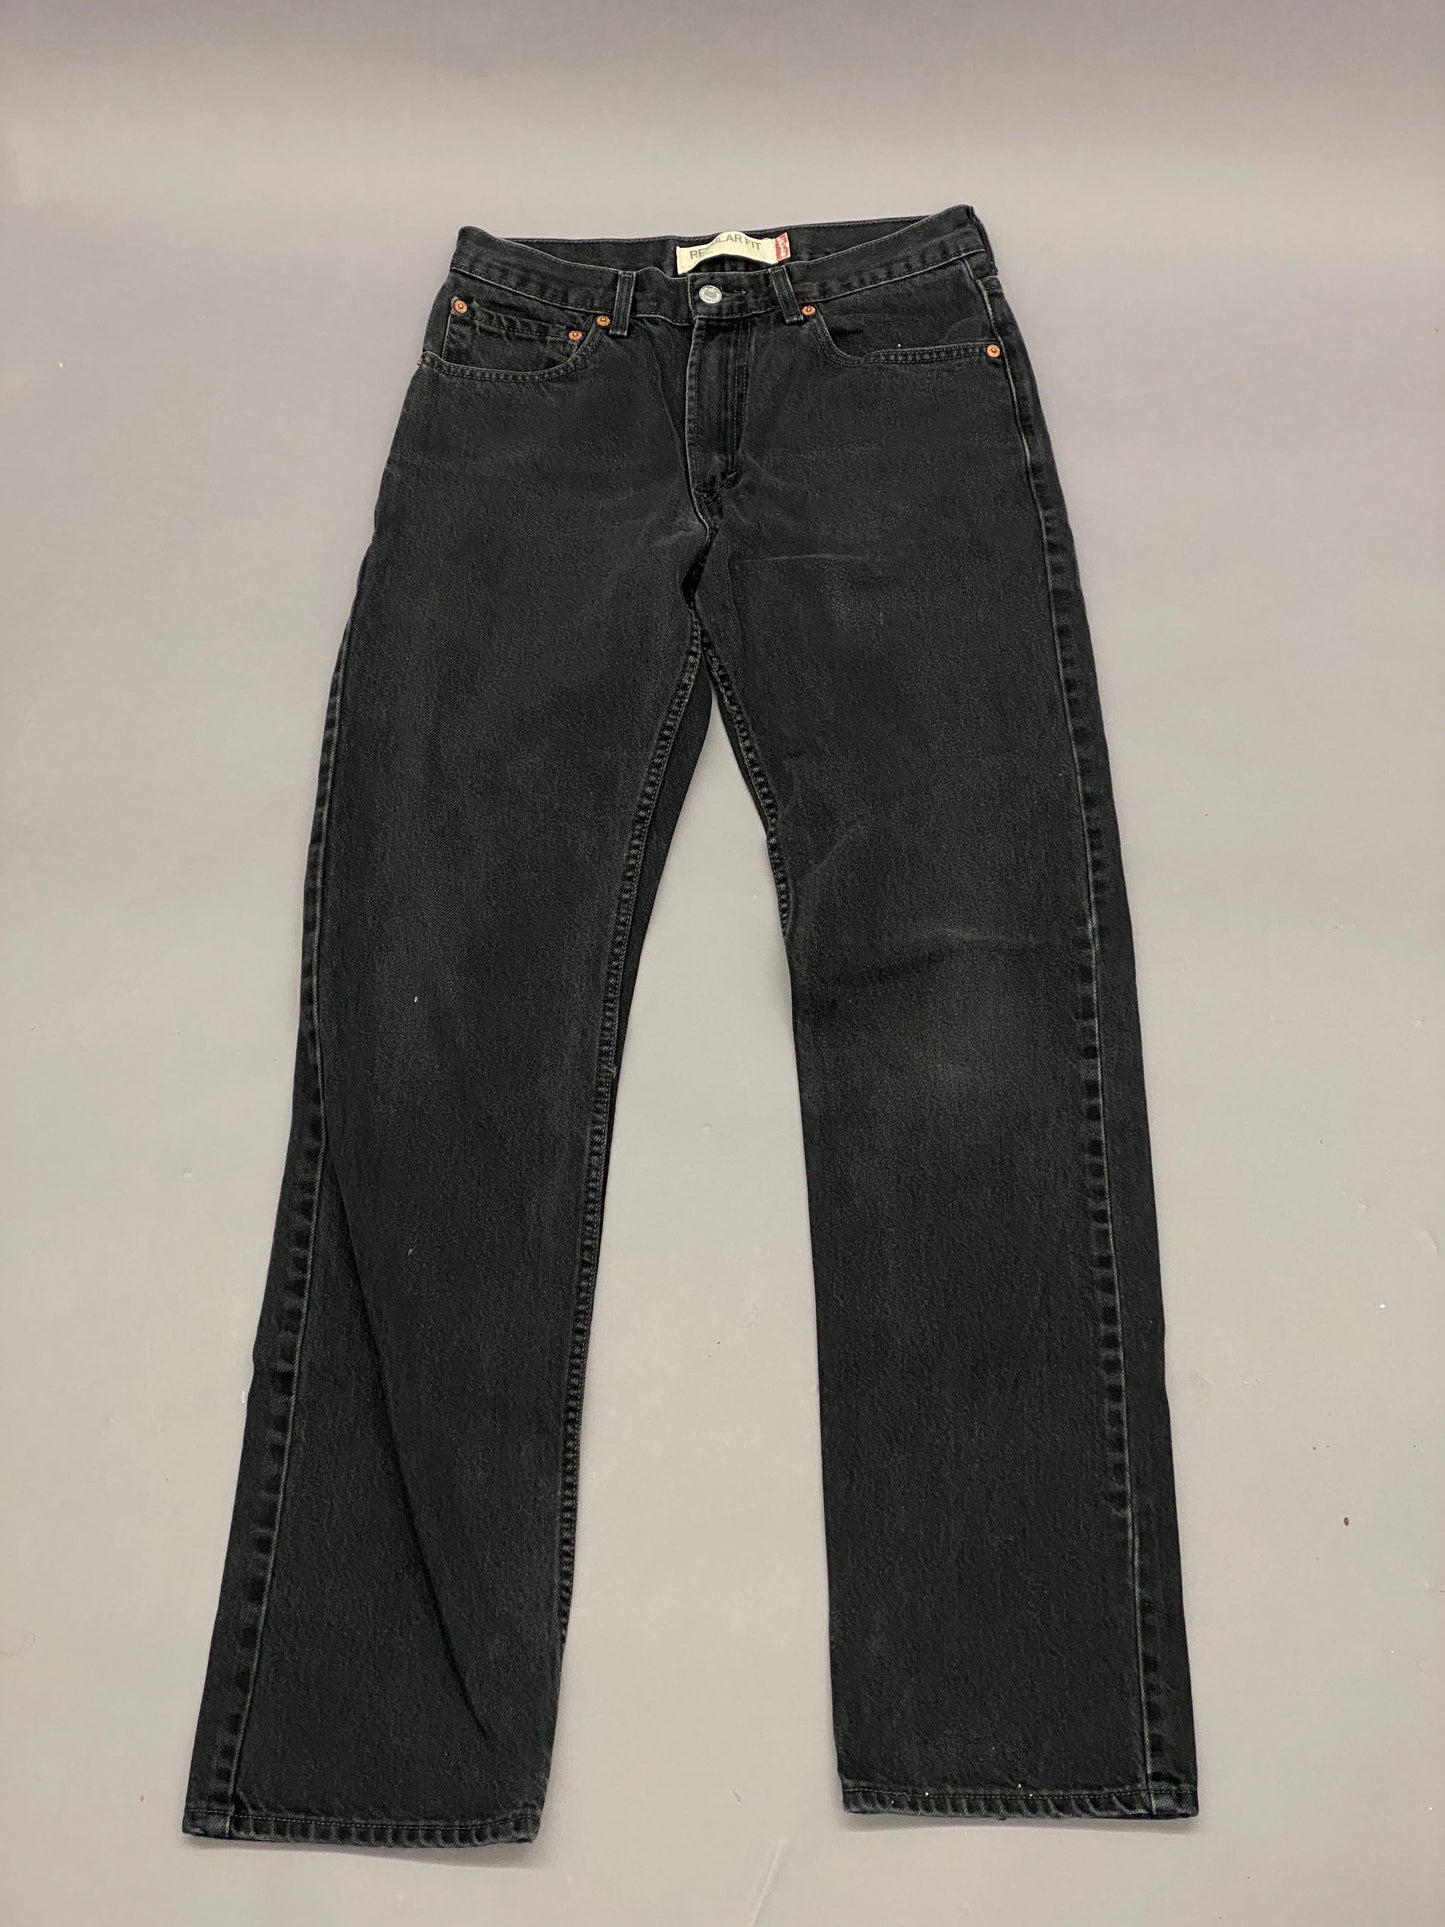 Levis 505 Vintage Jeans - 32x36